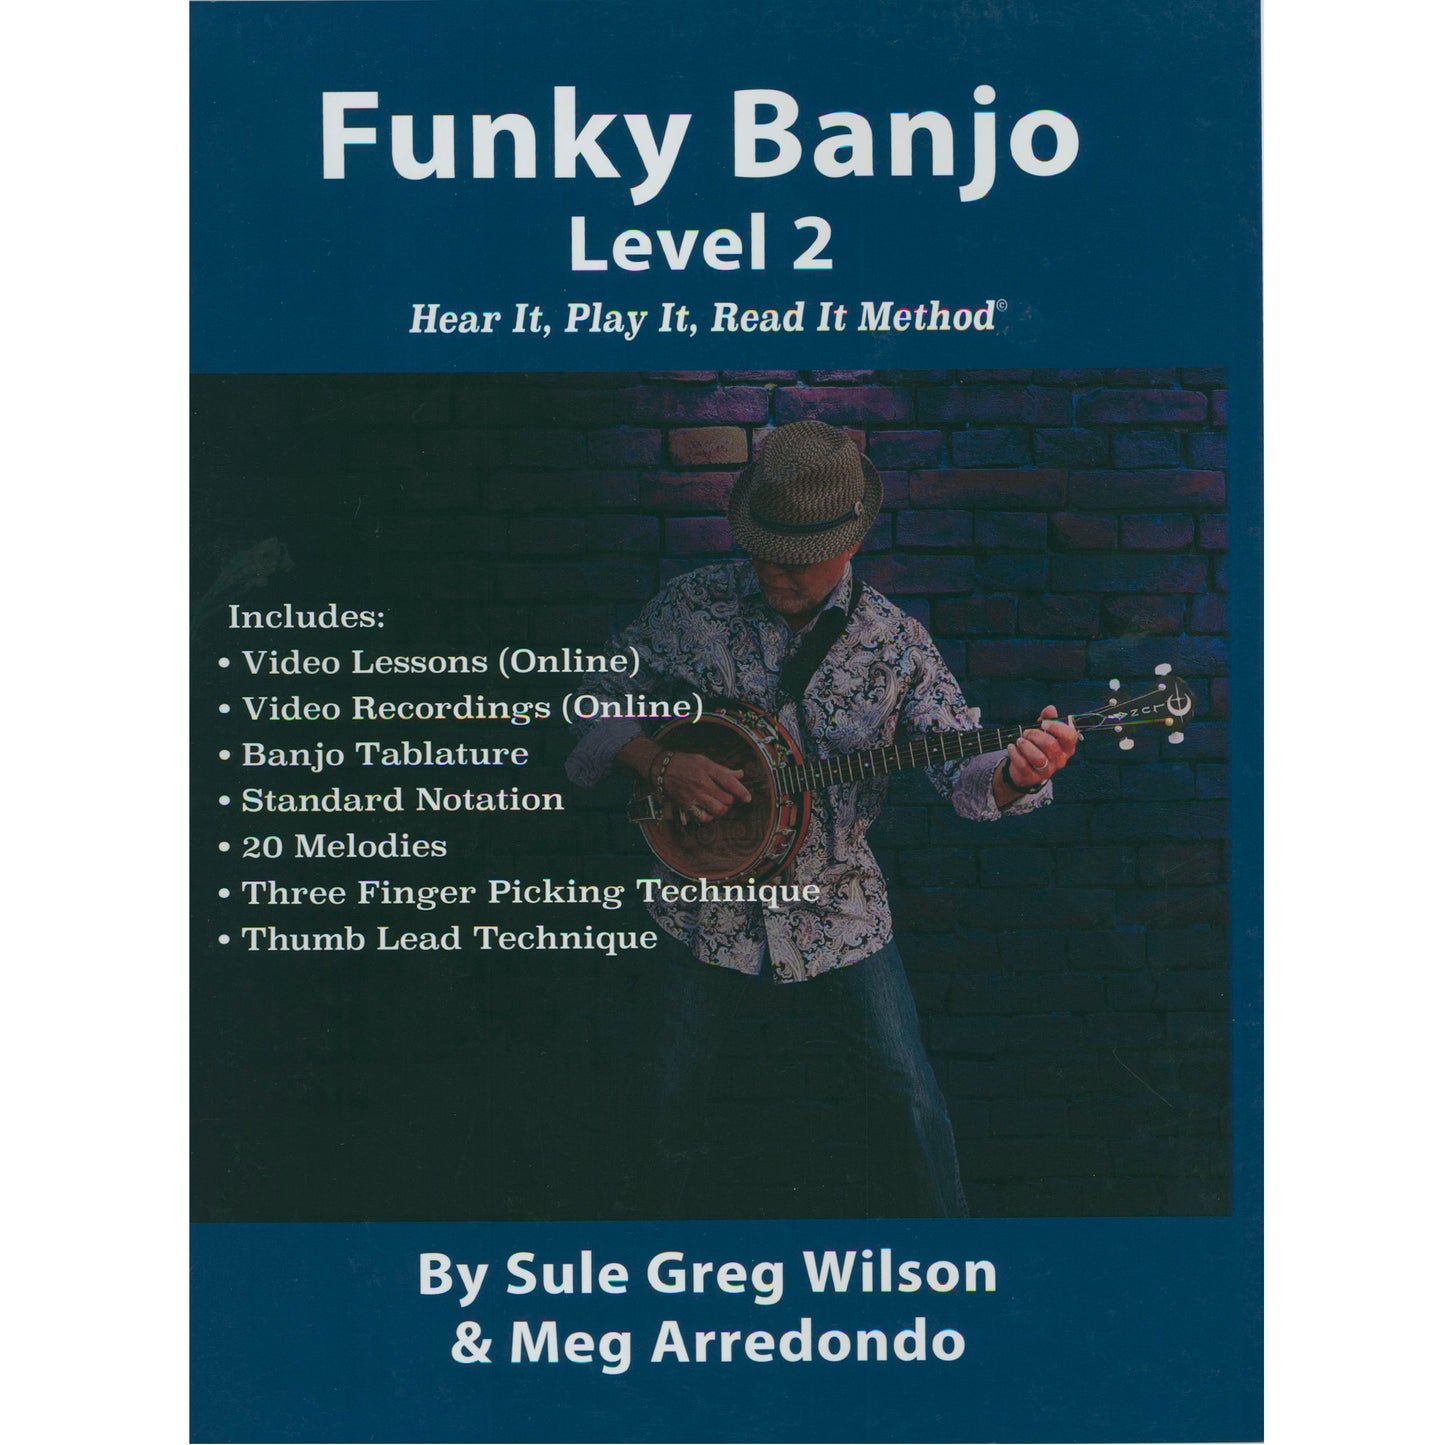 Funky Banjo Level 2 - Hear It, Play It, Read It Method